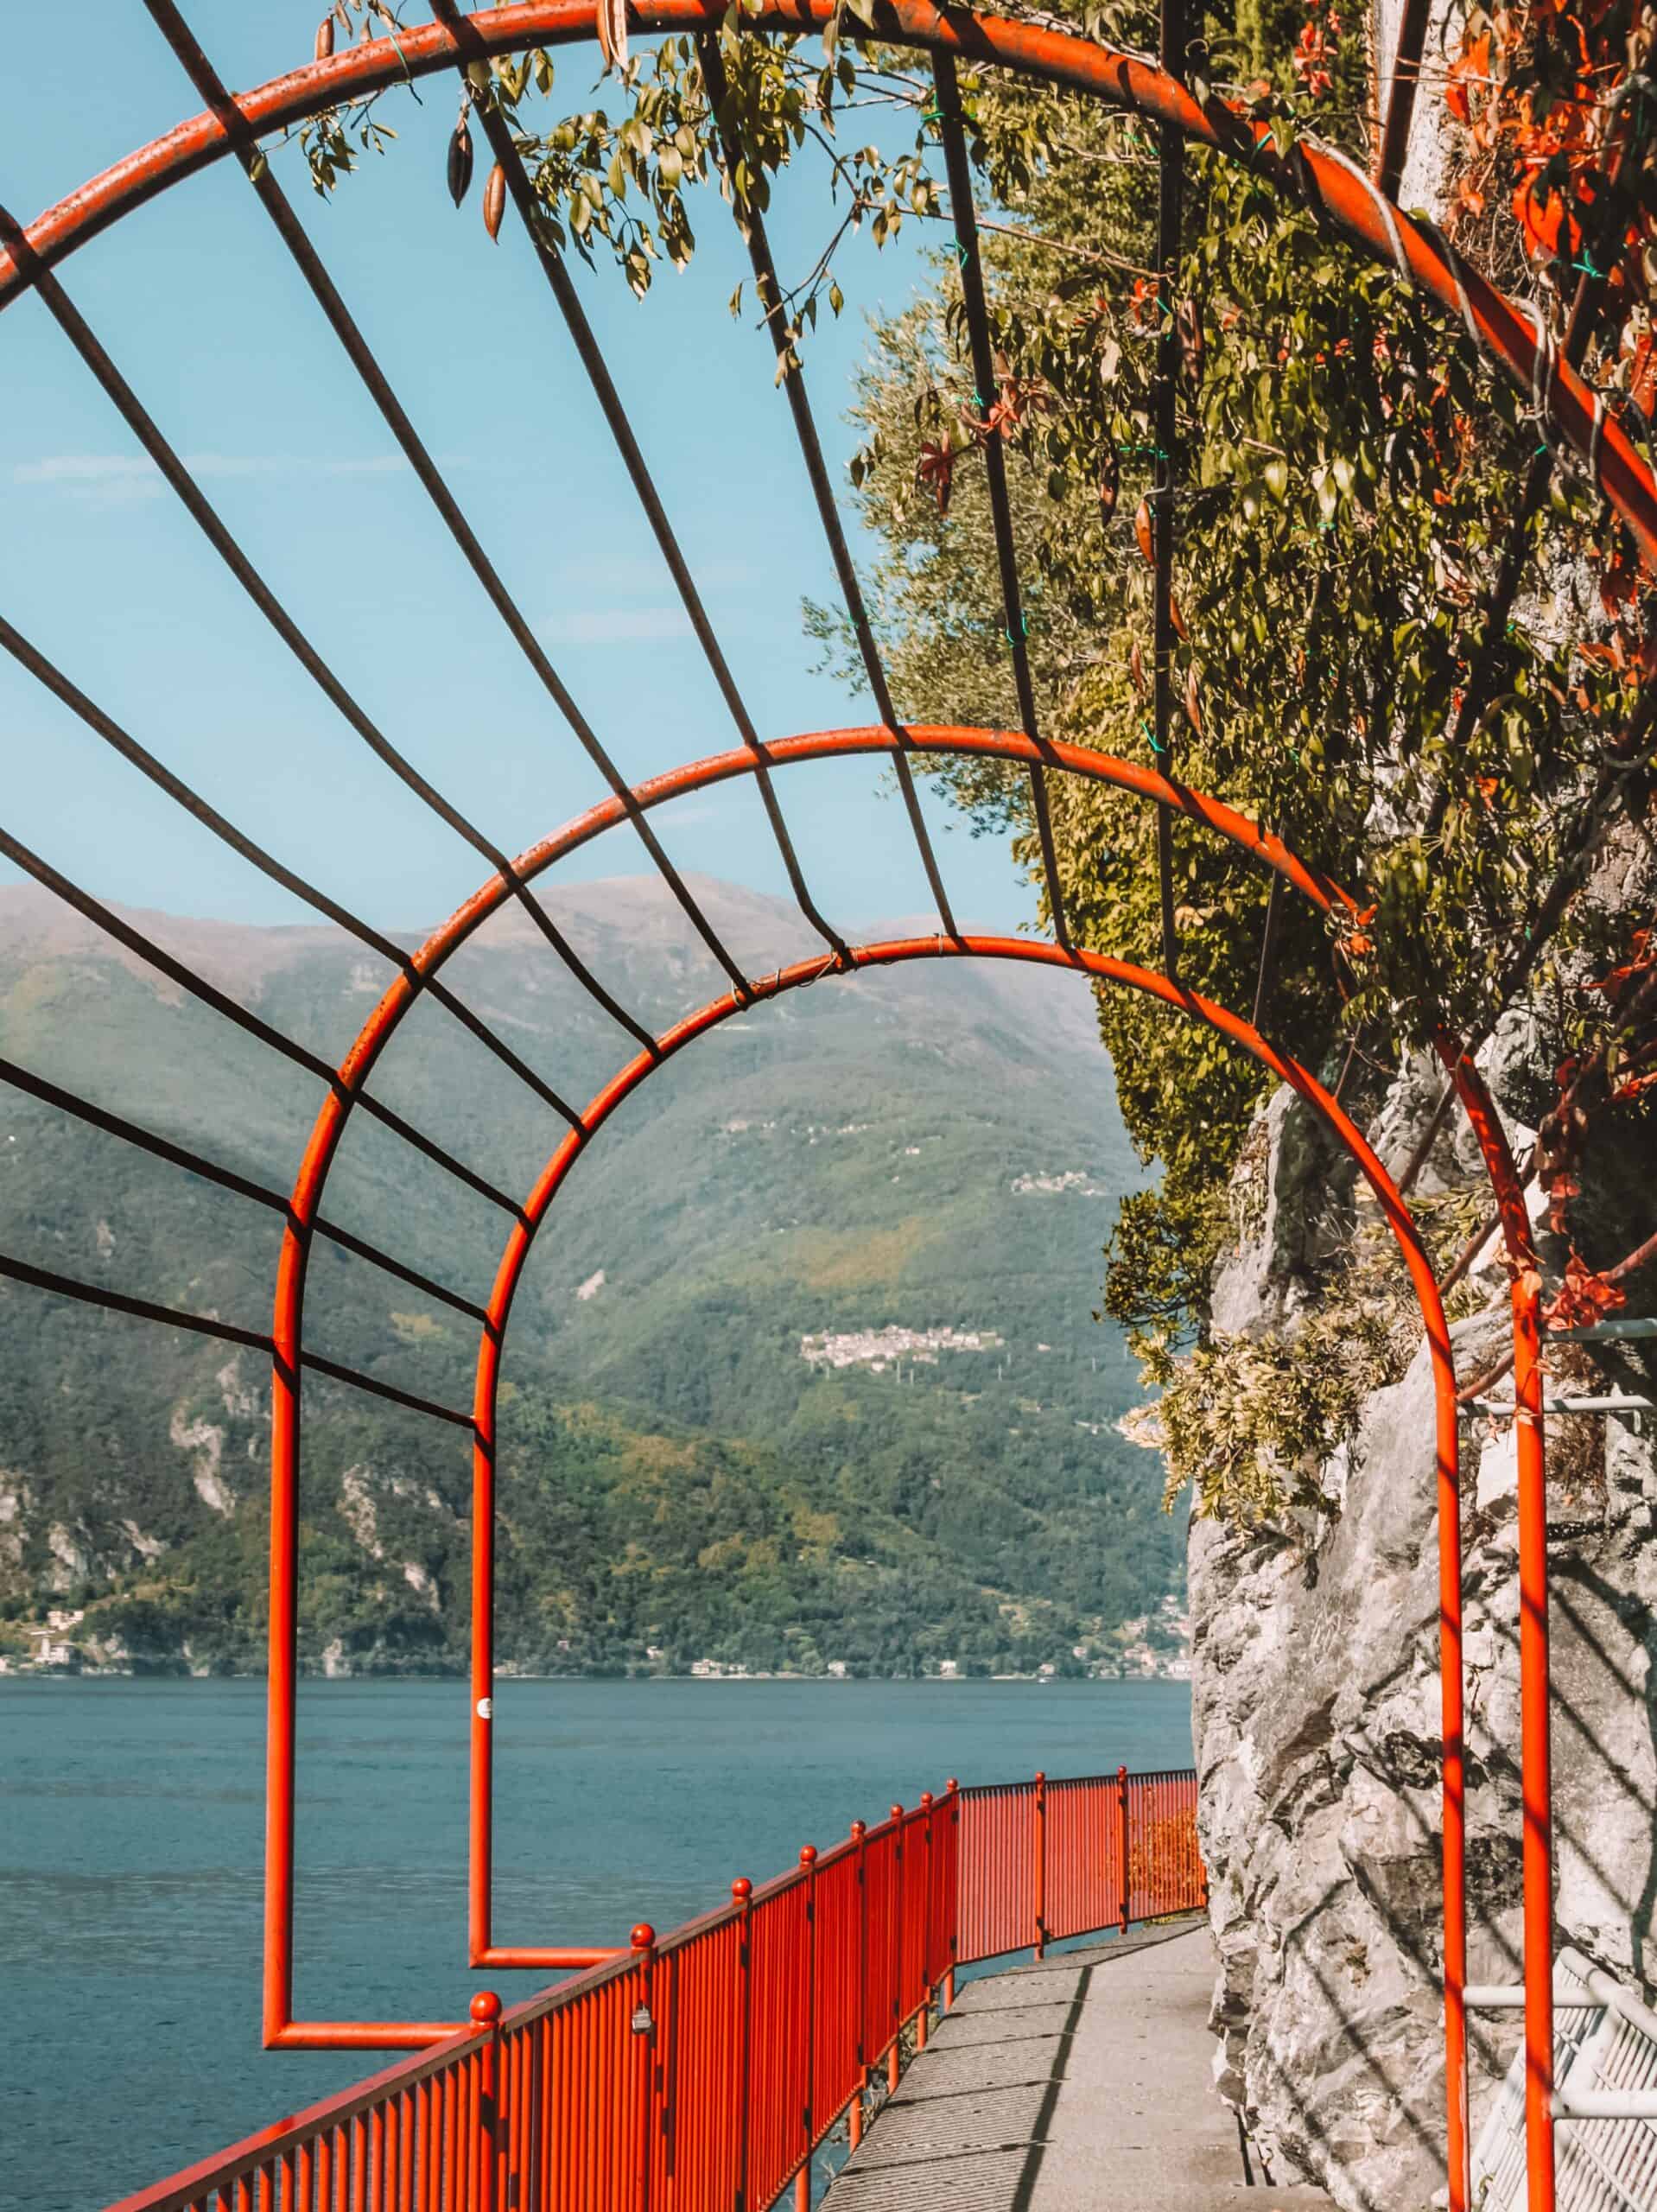 La passeggiata degli Innamorati, or the walk of lovers in Lake Como